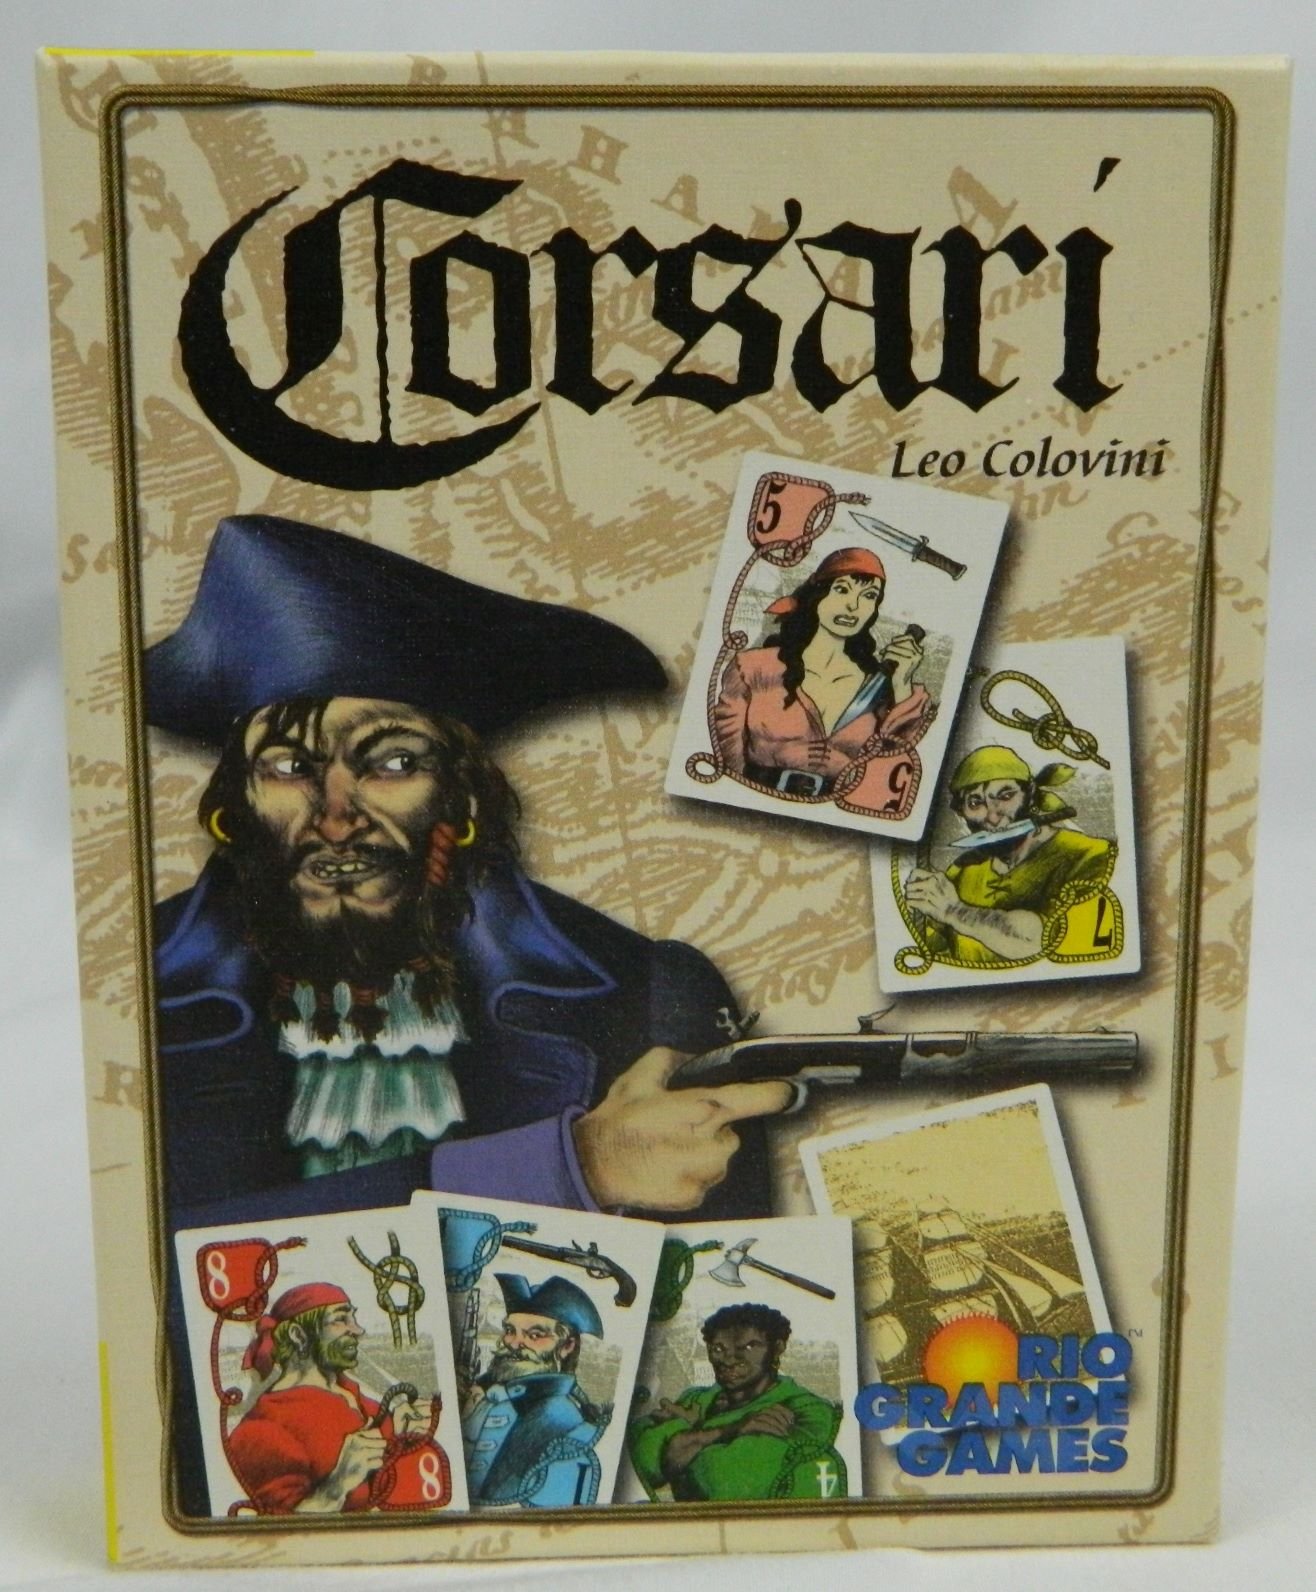 Box for Corsari